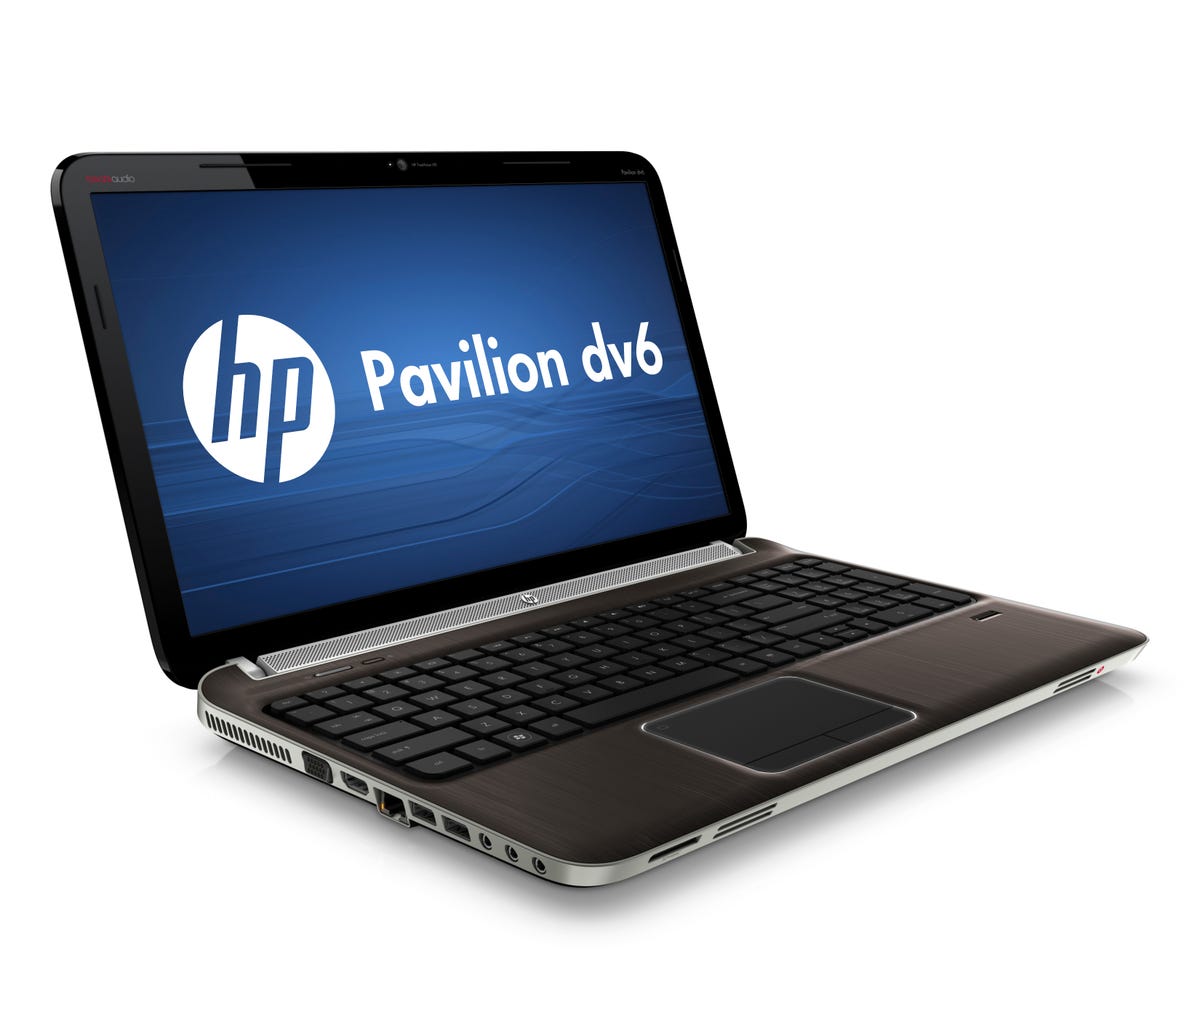 HP_Pavilion_dv6_Image_2.jpg